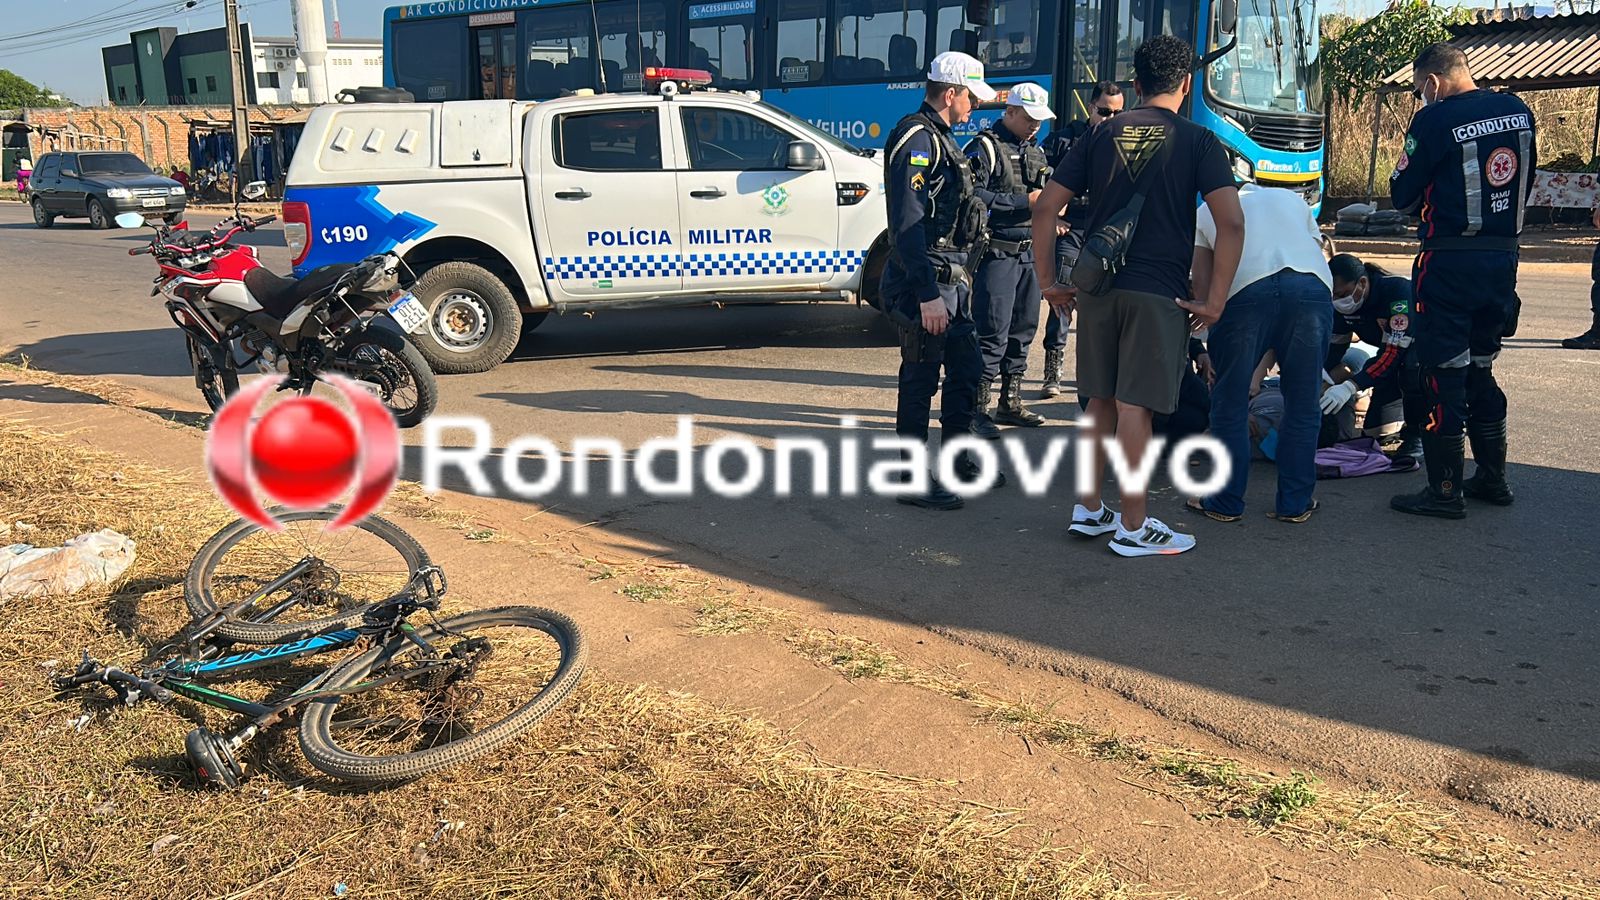 NA AMAZONAS: Motociclista fica com grave lesão na cabeça após atropelamento